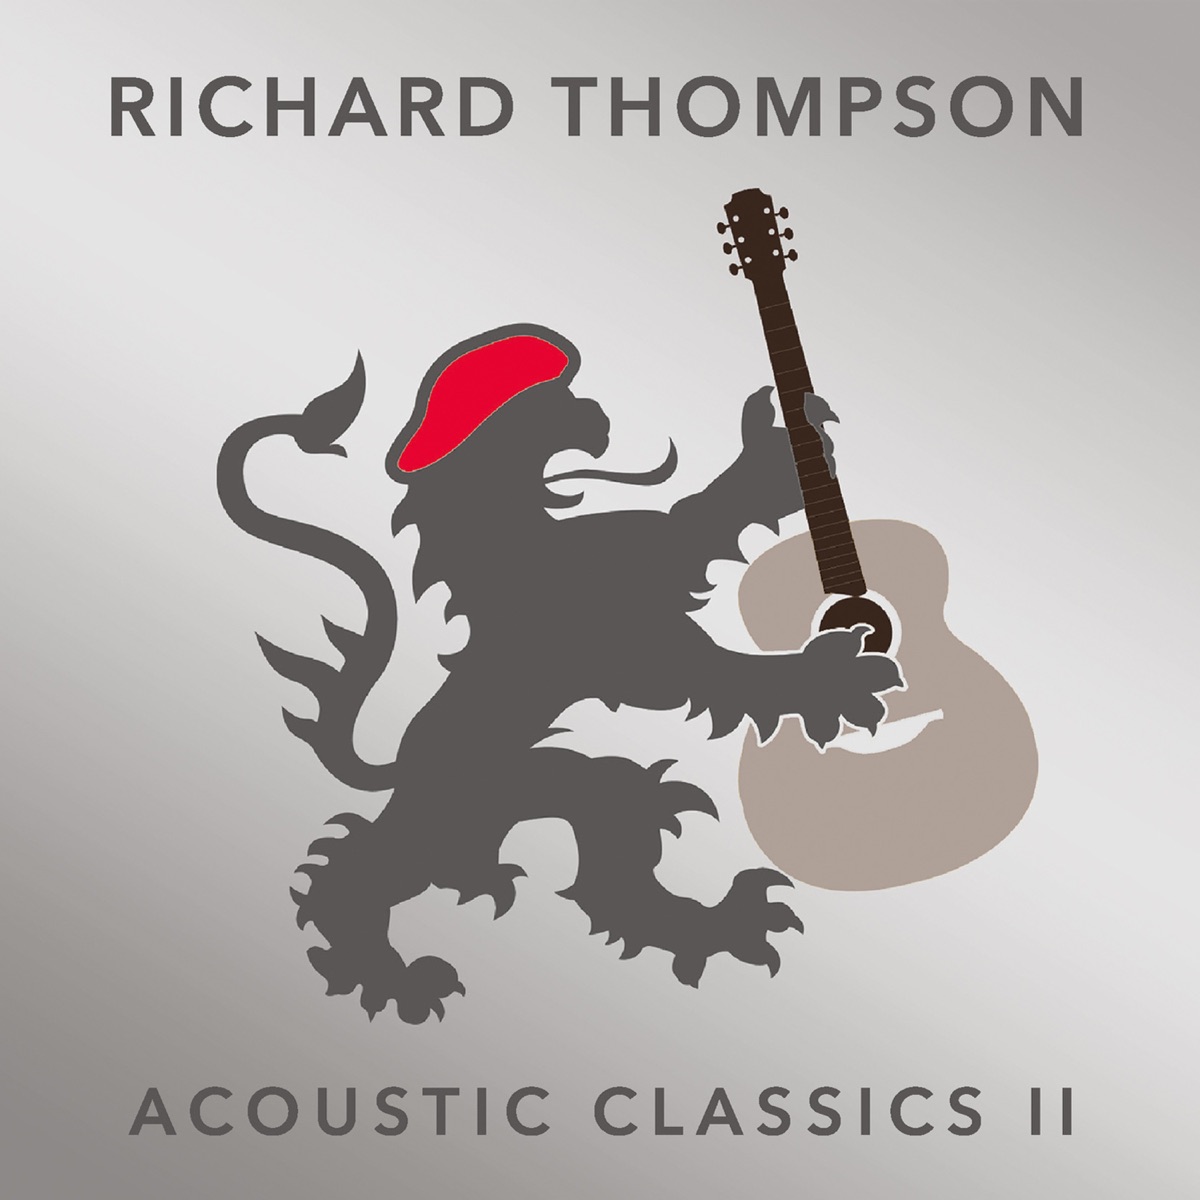 Acoustic Classics II - リチャード・トンプソンのアルバム - Apple Music